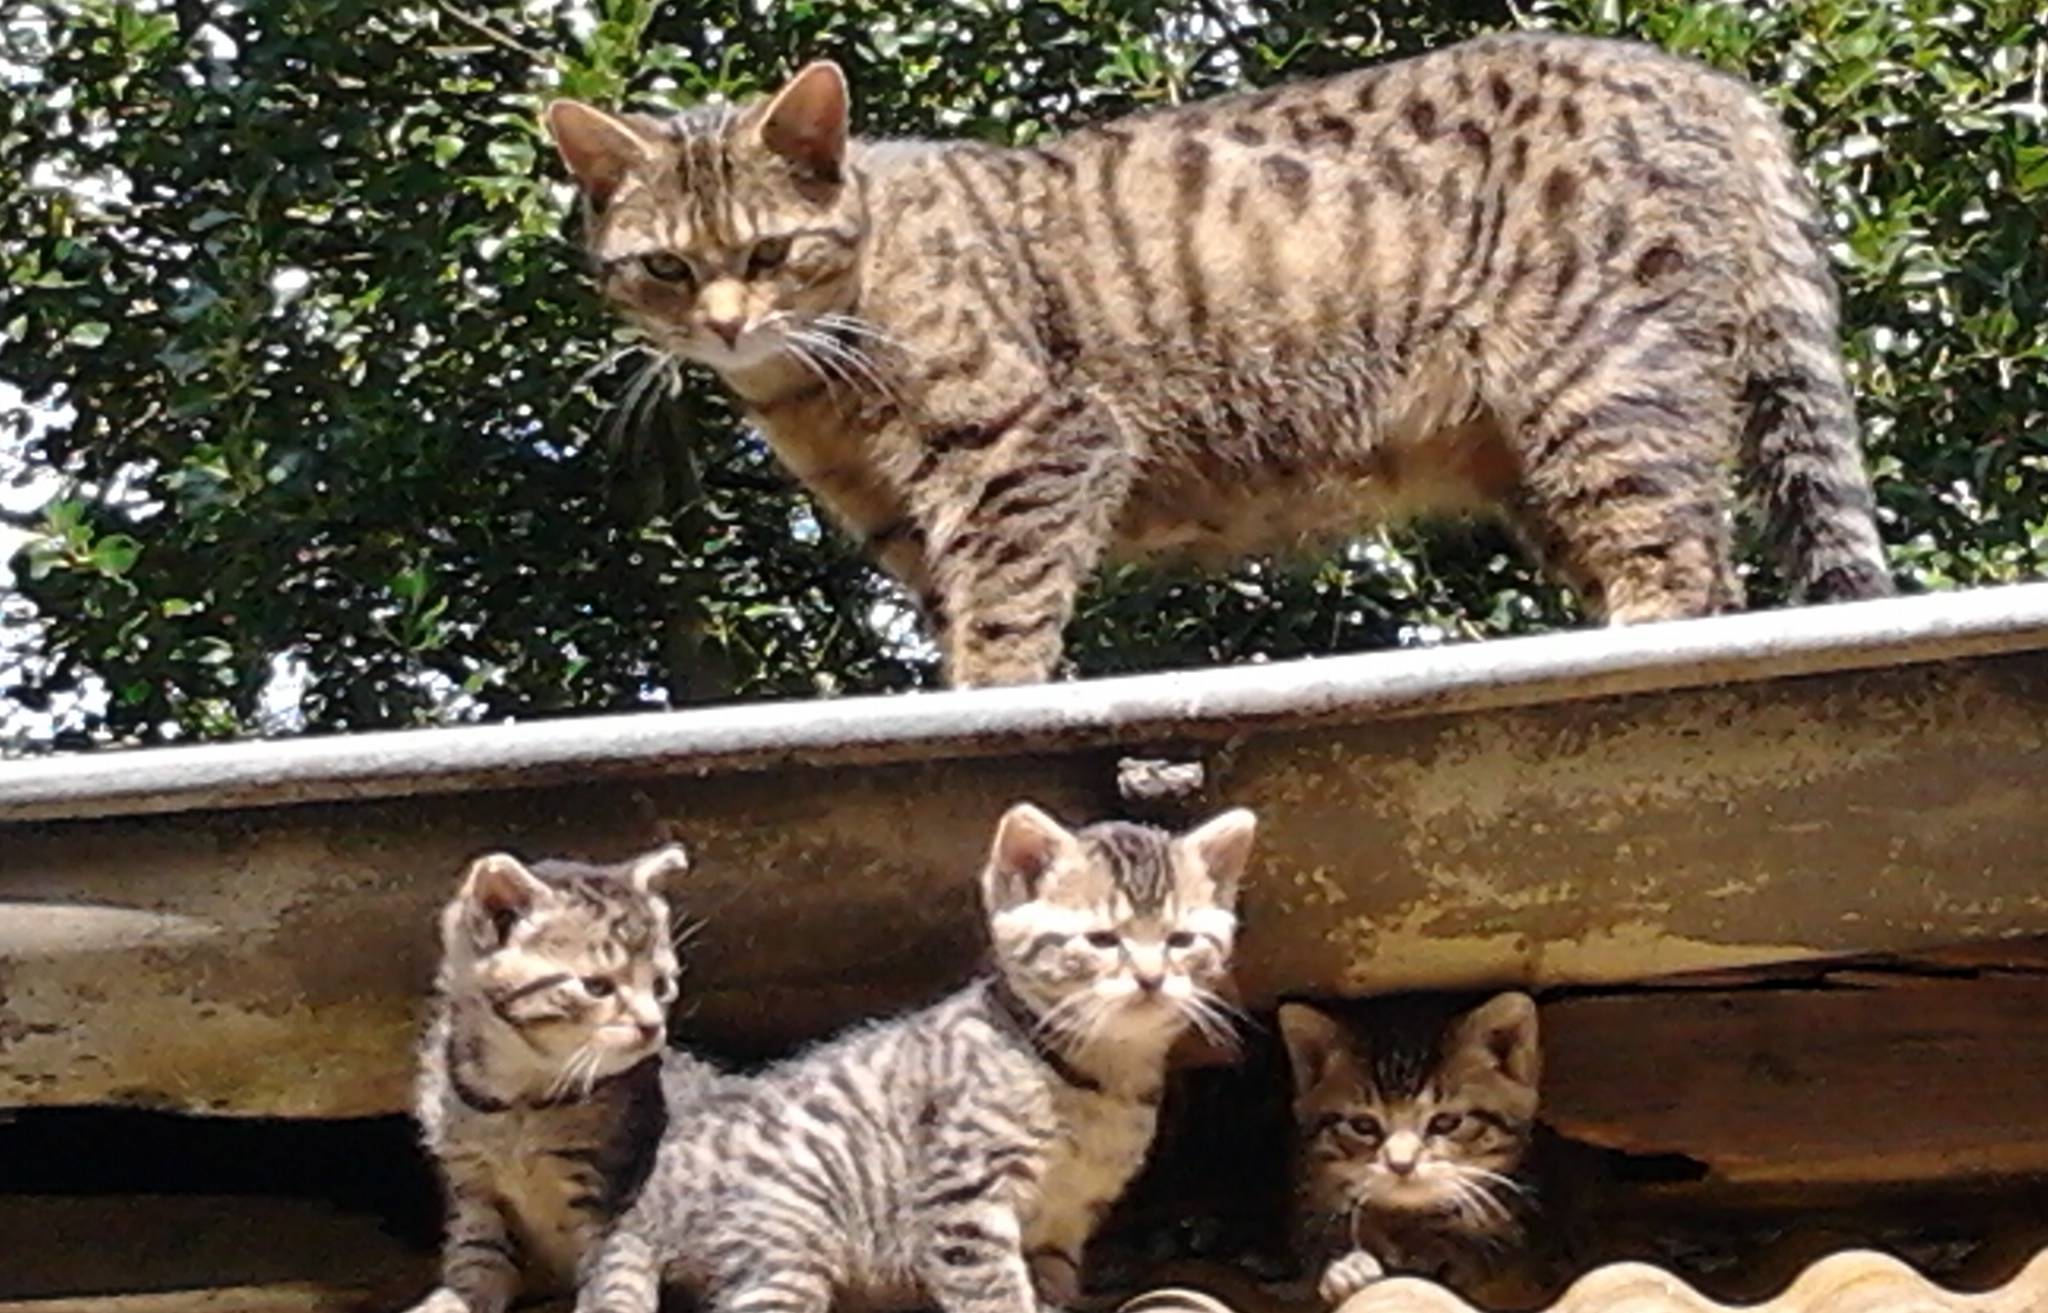  Immer wieder kommen wilde Katzen in den Garten und suchen Zuflucht für sich und ihre Babys. Gabriele Gleede sorgt für die scheuen Tiere. 
  